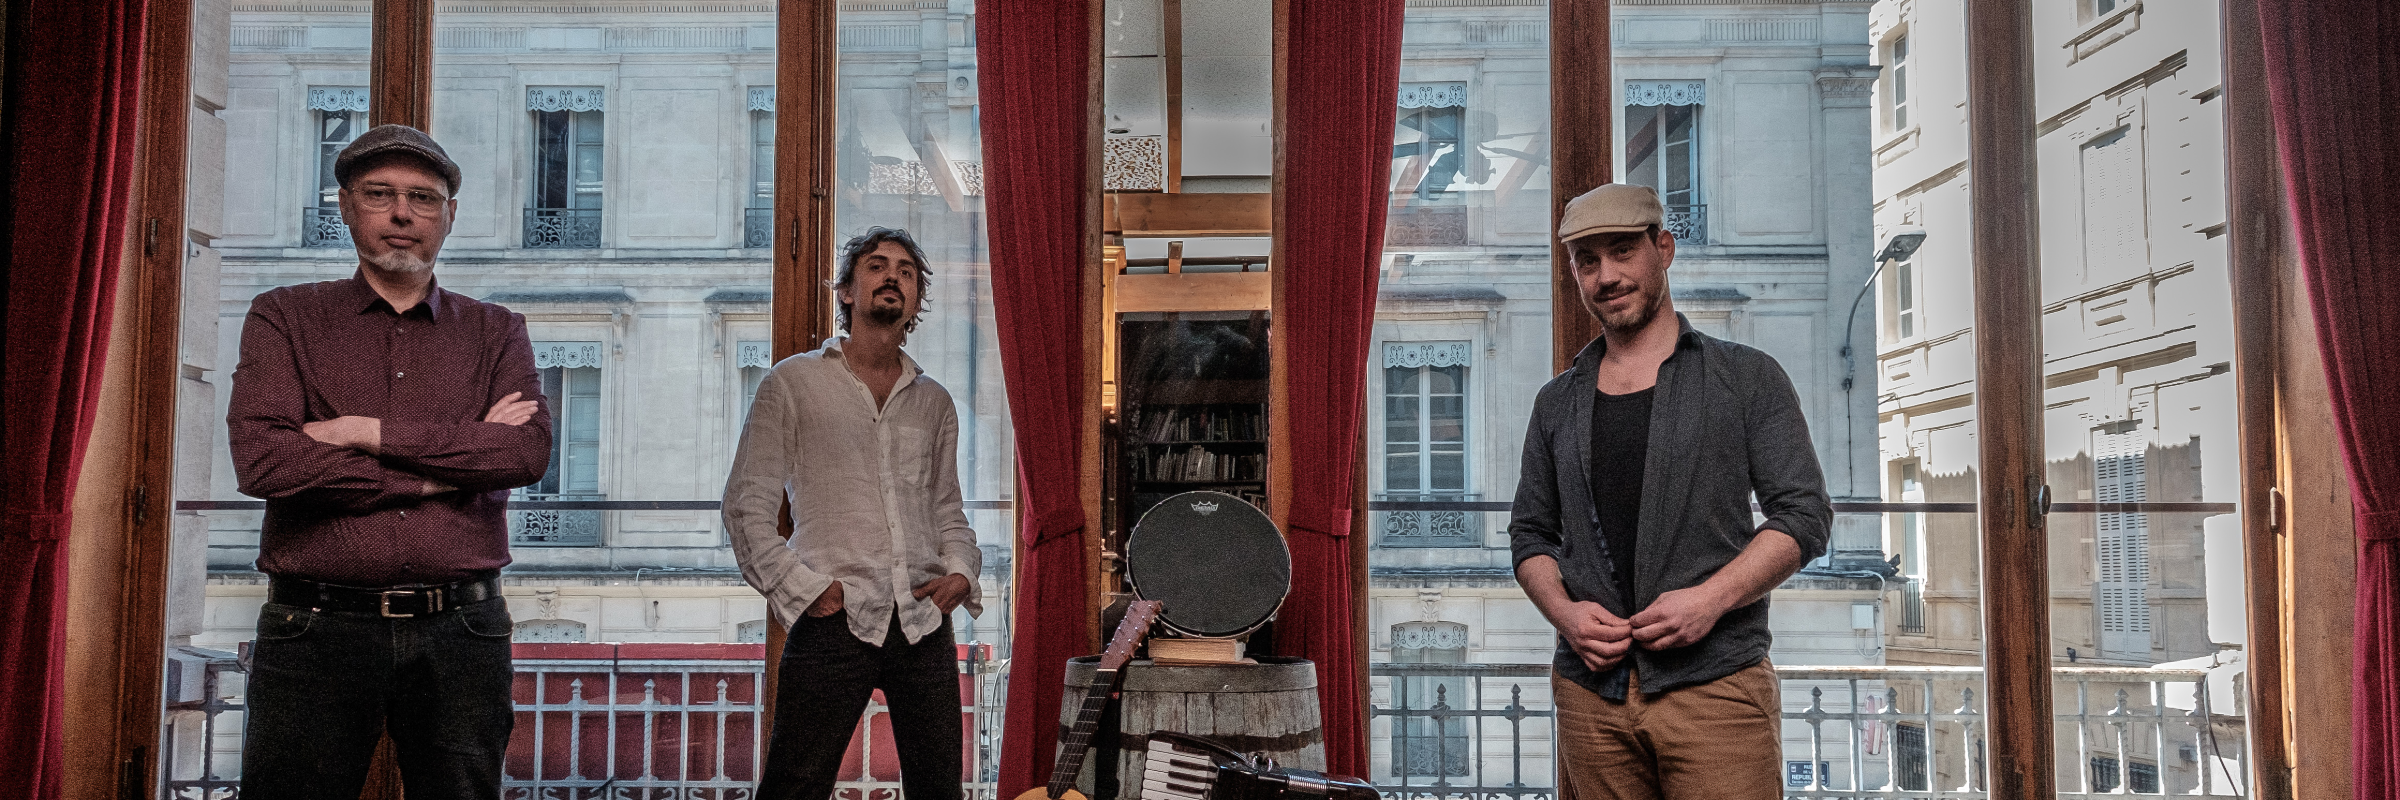 Tarant3lla, groupe de musique Musiques du monde en représentation à Drôme - photo de couverture